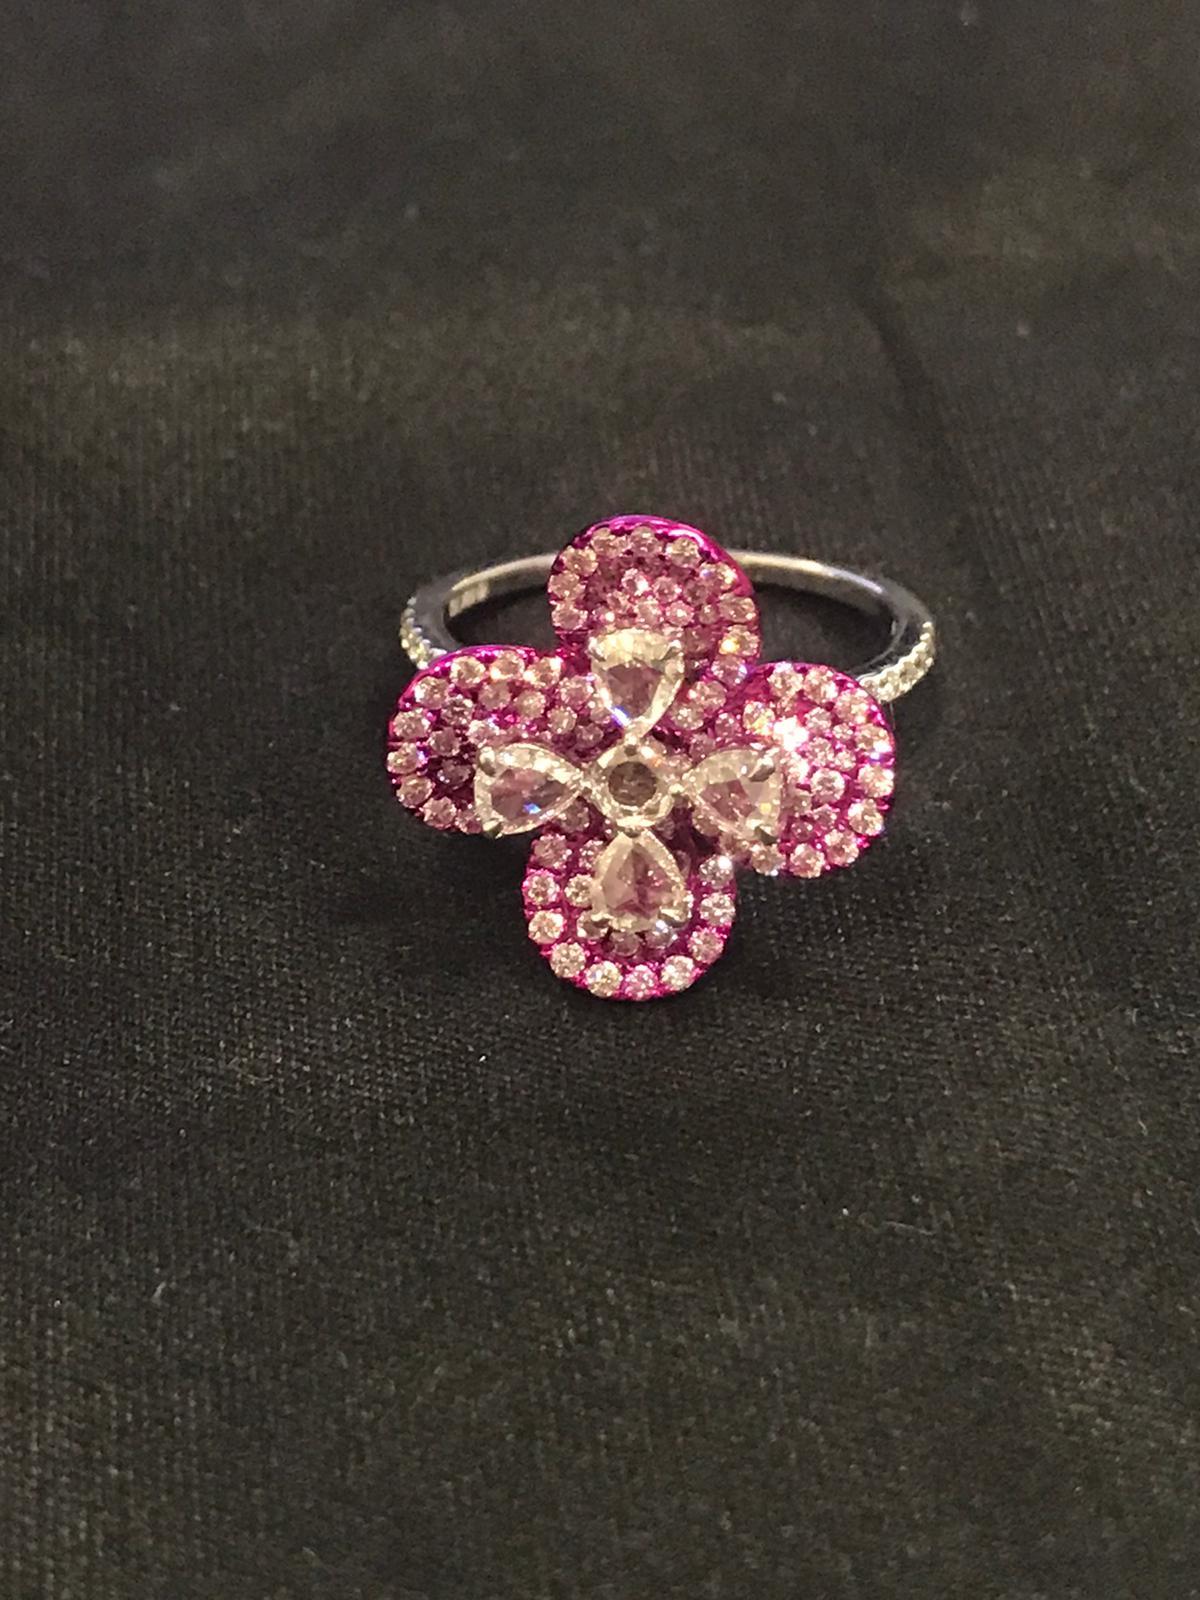 PANIM Rosecut Diamant-Blumen-Baumelarmband aus 18K Weißgold

Unser Ring ist mit einem hochwertigen, birnenförmigen Diamanten verziert und aus 18-karätigem Gold gefertigt, was ihm ein luxuriöses, warmes Finish verleiht. Jeder runde Diamant, der so